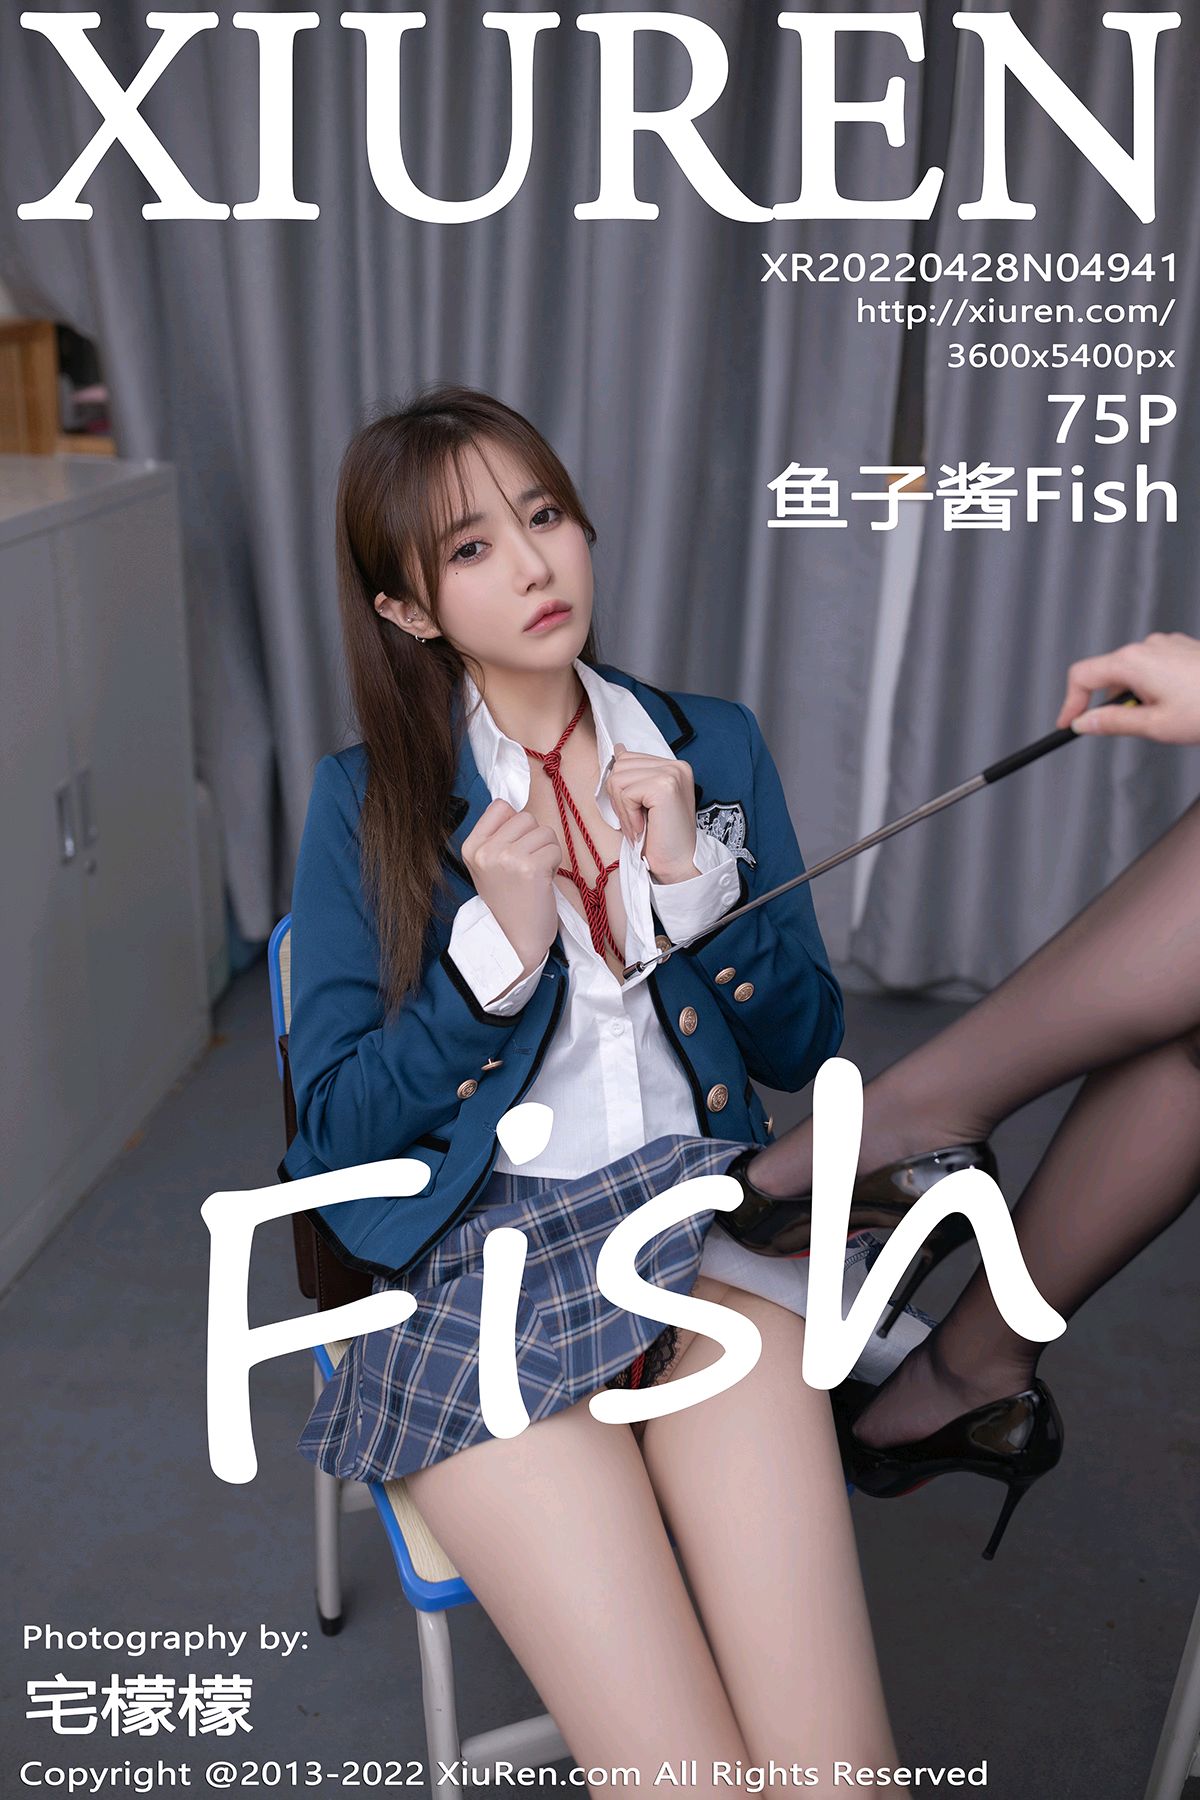 [XiuRen秀人网] 2022.04.28 No.4941 鱼子酱Fish [75P652MB]-女神汇